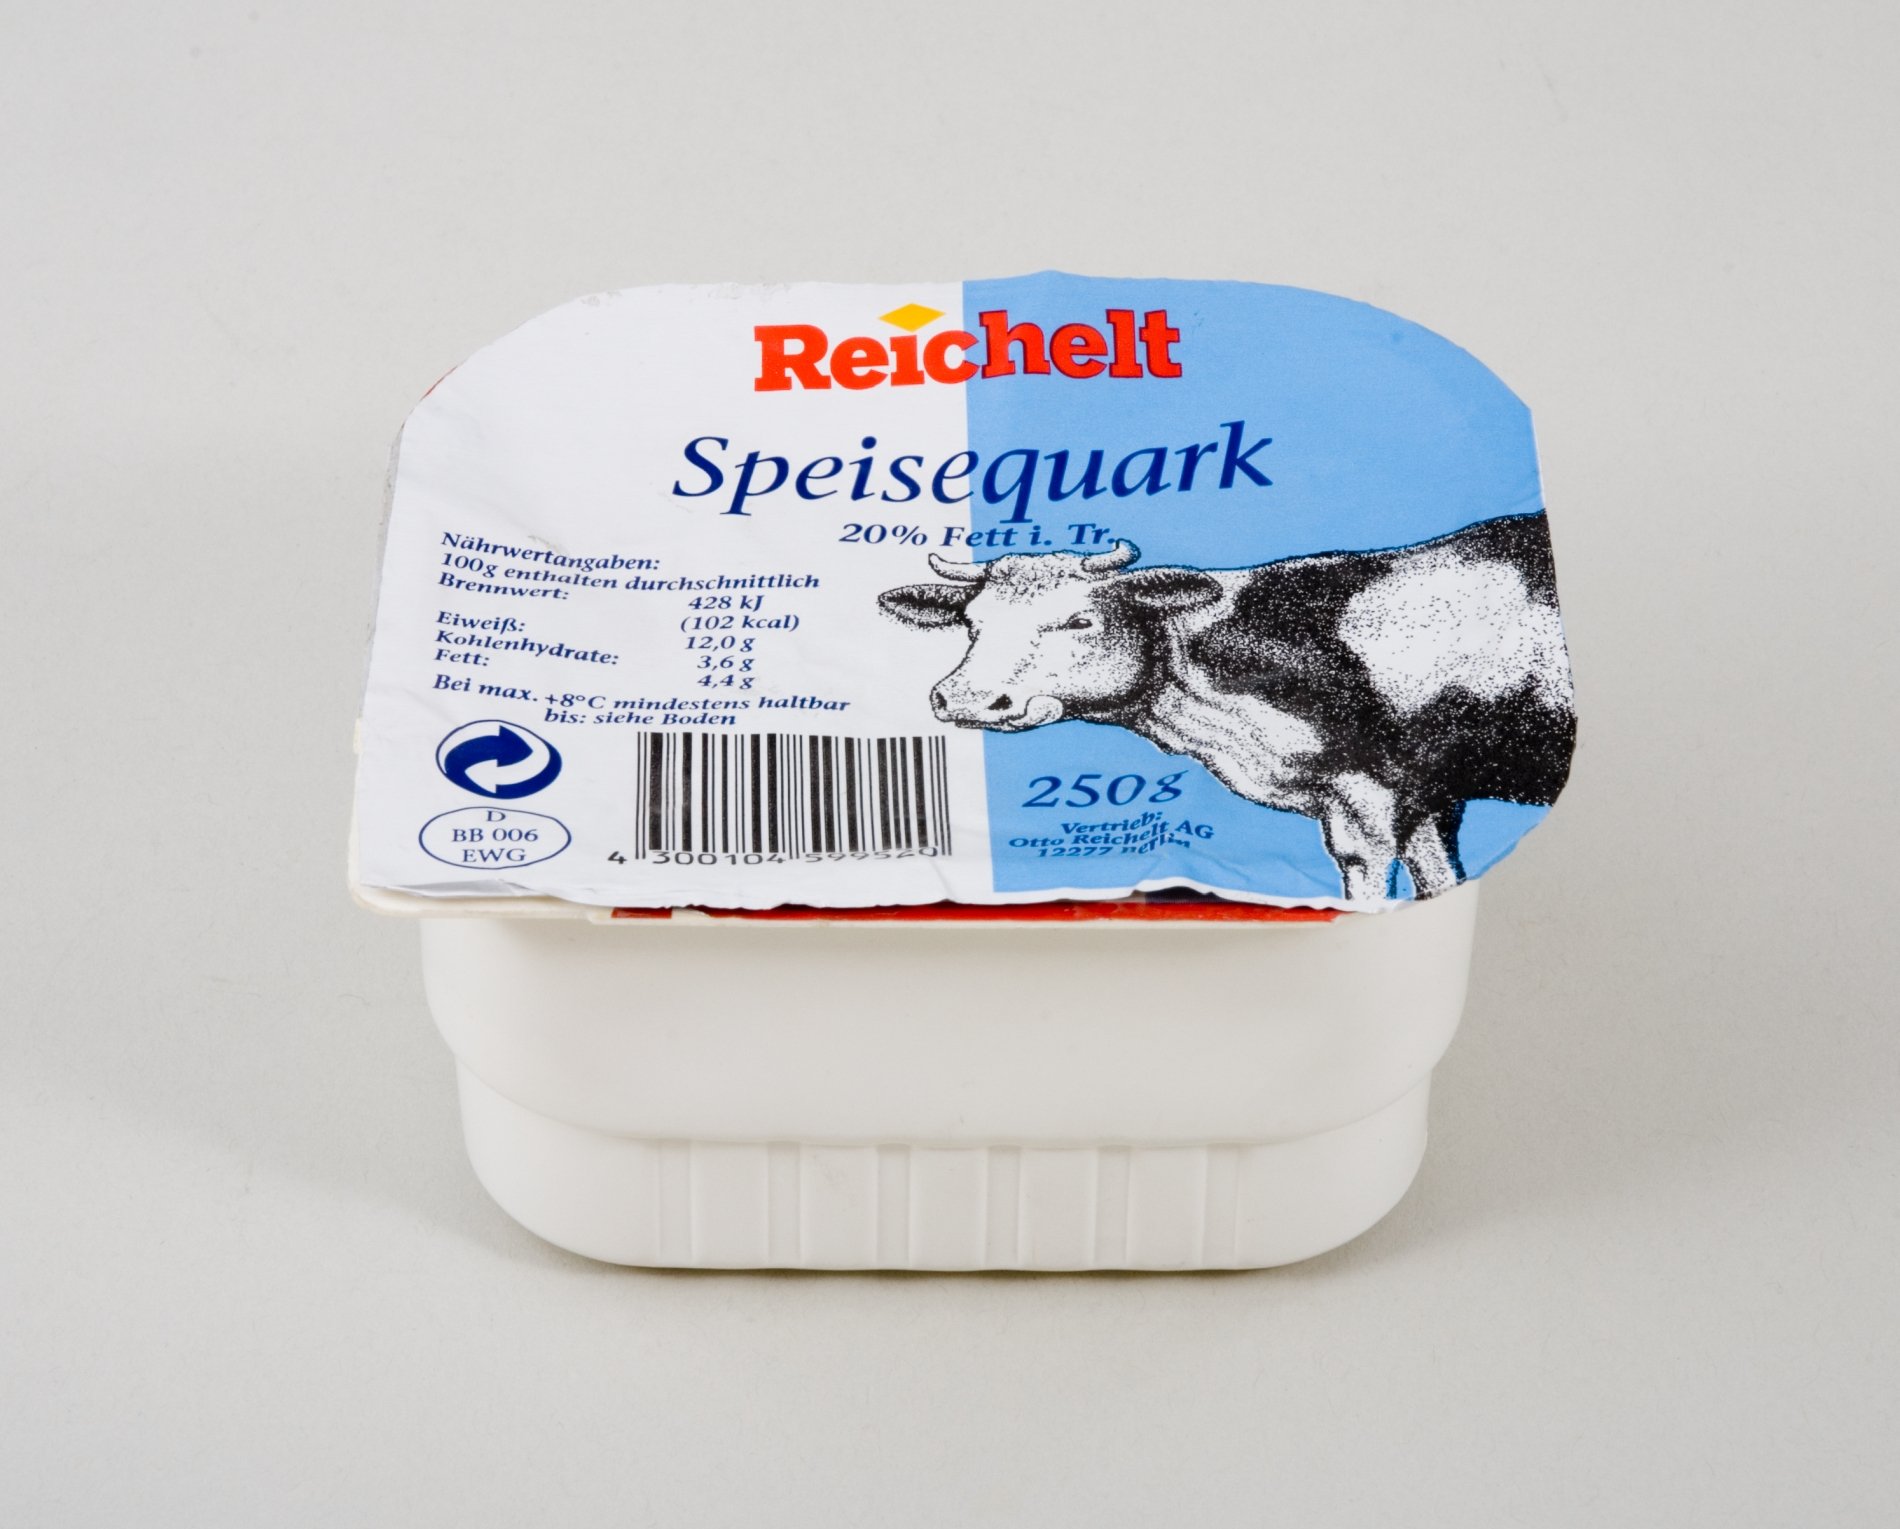 Warenmuster " Speisequark" 20% Fett der Firma "Reichelt" (Stiftung Domäne Dahlem - Landgut und Museum, Weiternutzung nur mit Genehmigung des Museums CC BY-NC-SA)